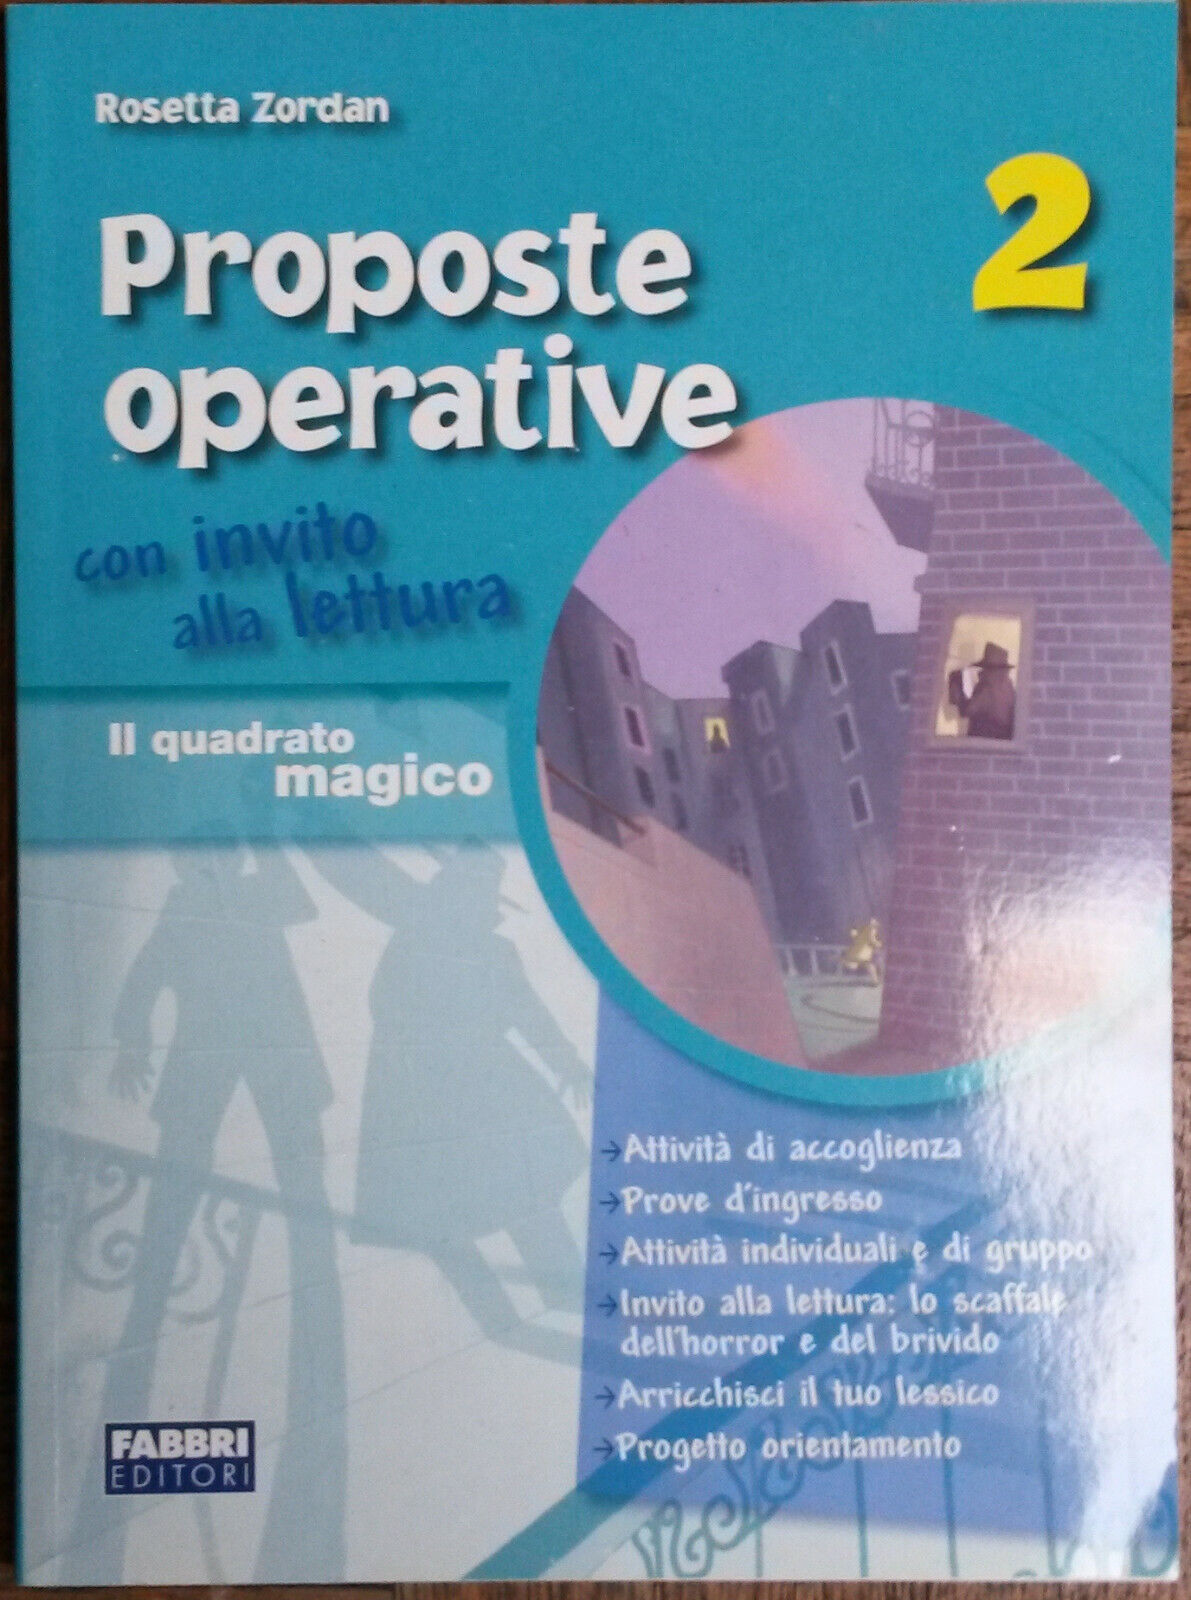 Proposte operative Vol. 2 - Rosetta Zordan - Fabbri Editori,2011 - R